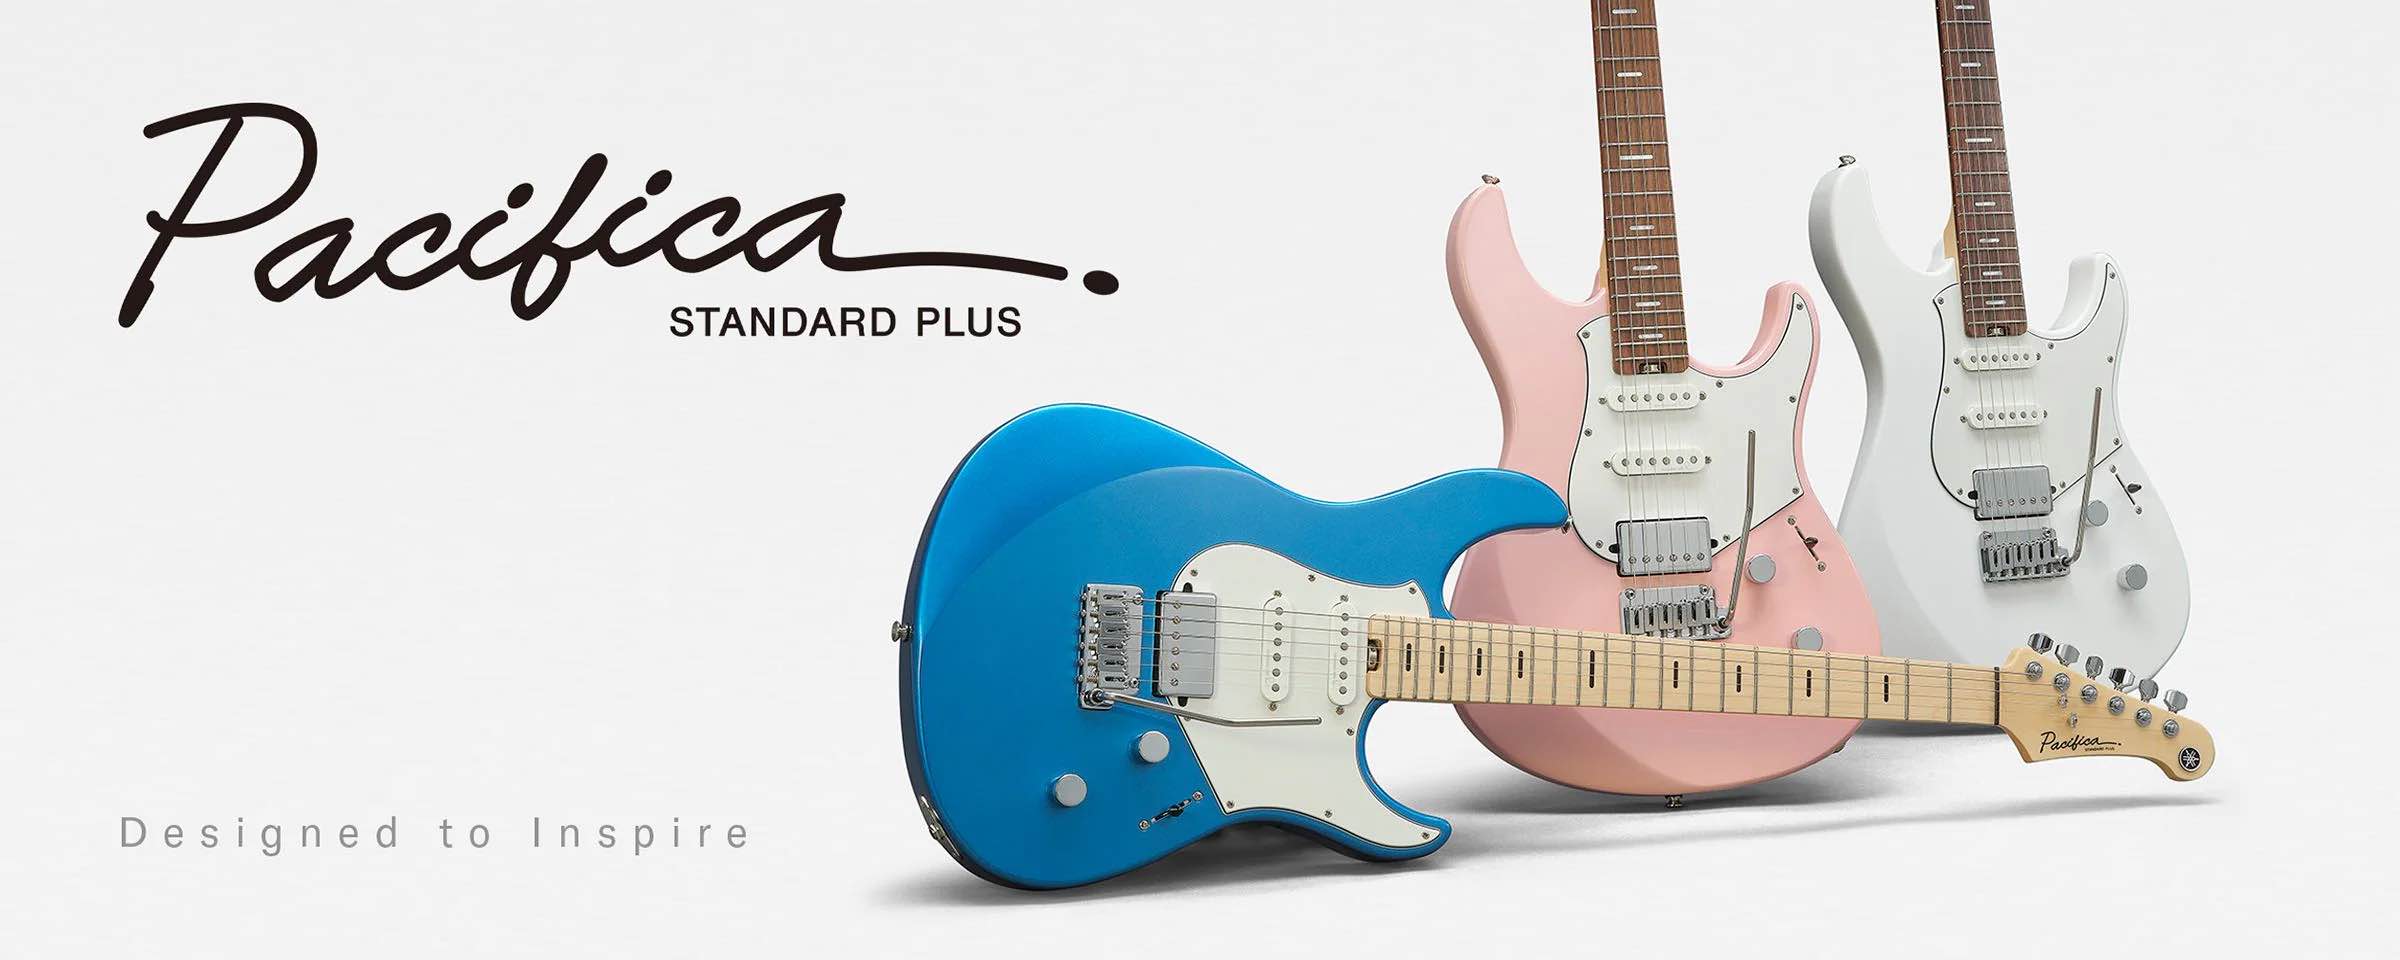 Yamaha PACS+12: guitarras eléctricas de gama alta, con un tono, una respuesta y una comodidad excepcionales